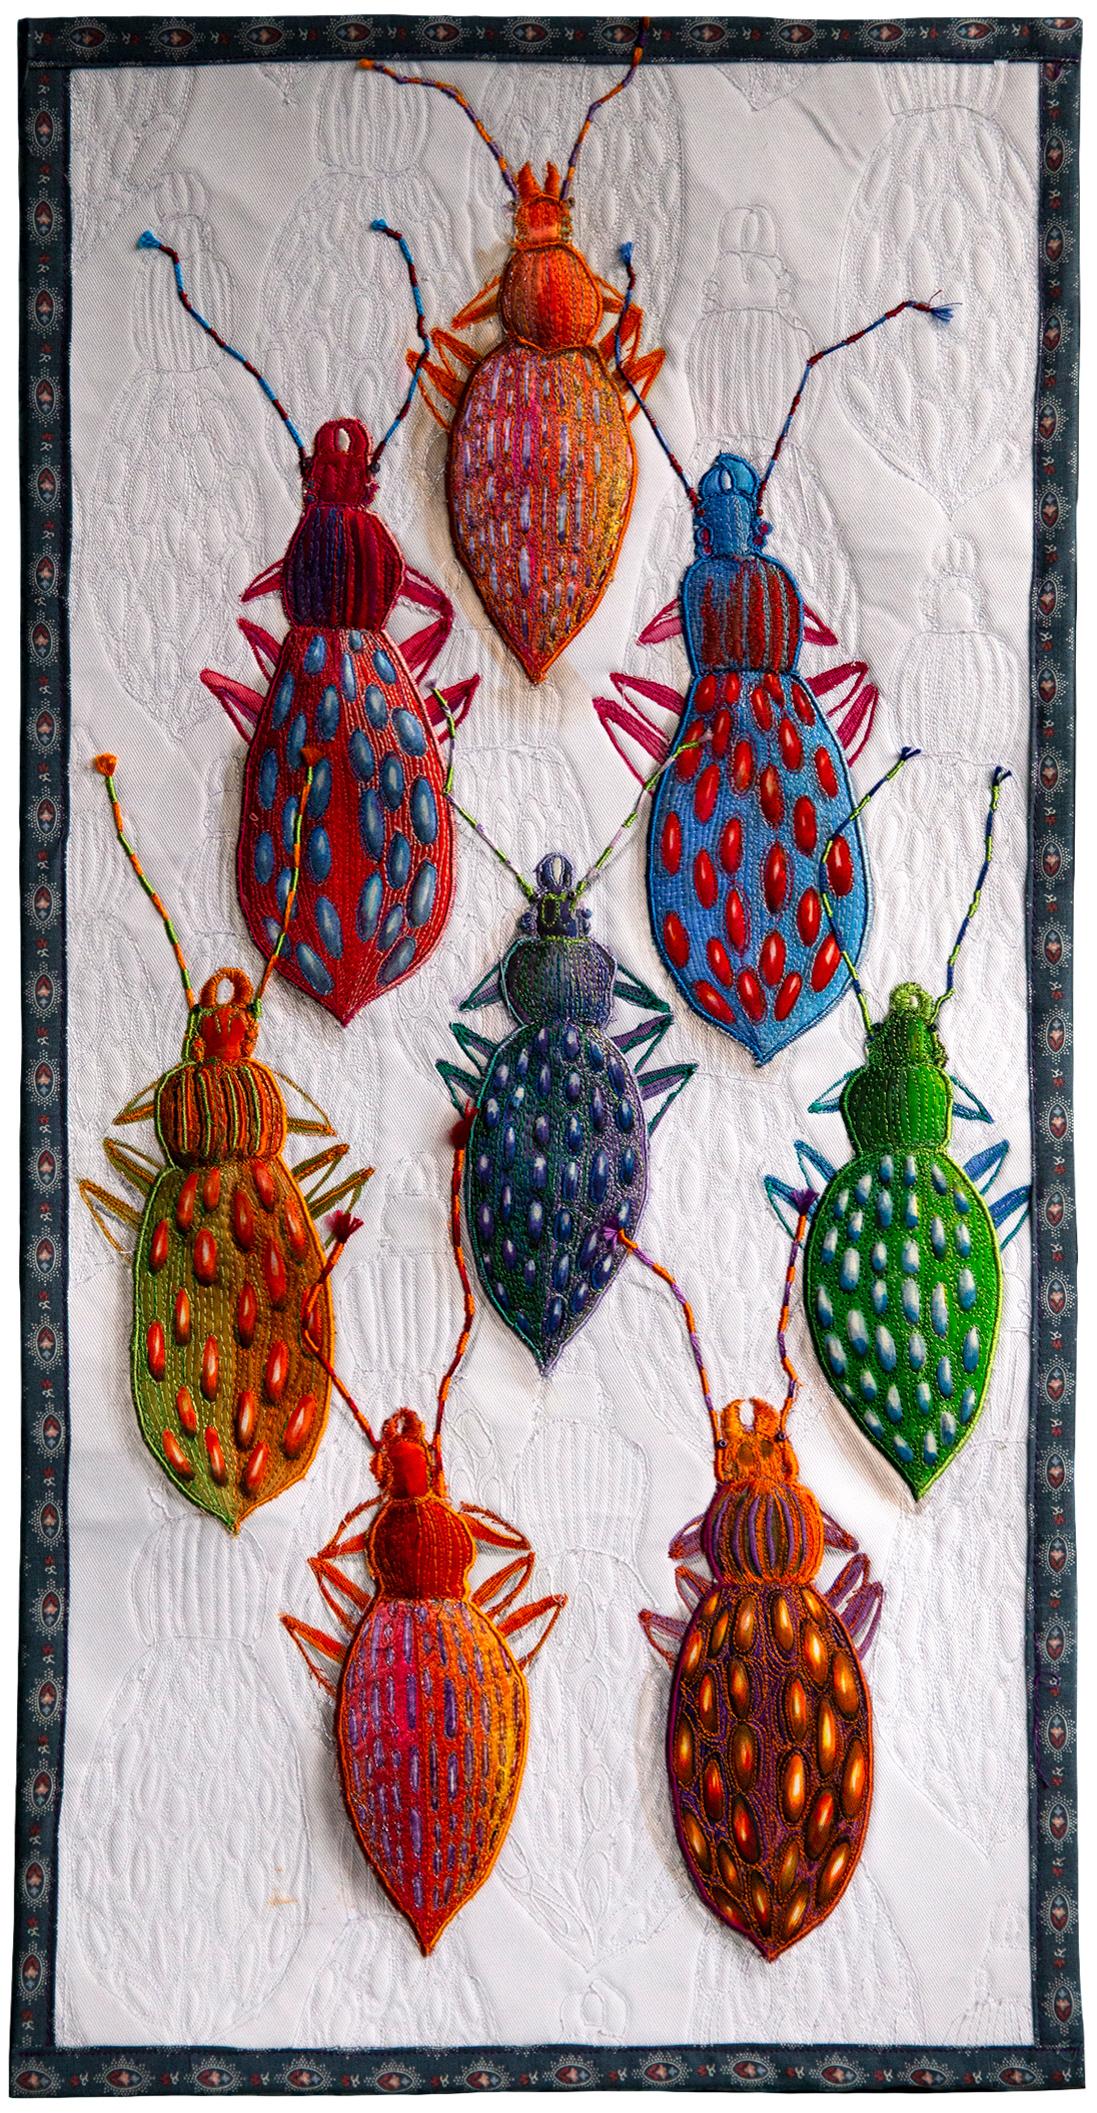 Irene Birute Manion - Blister Beetle Collection